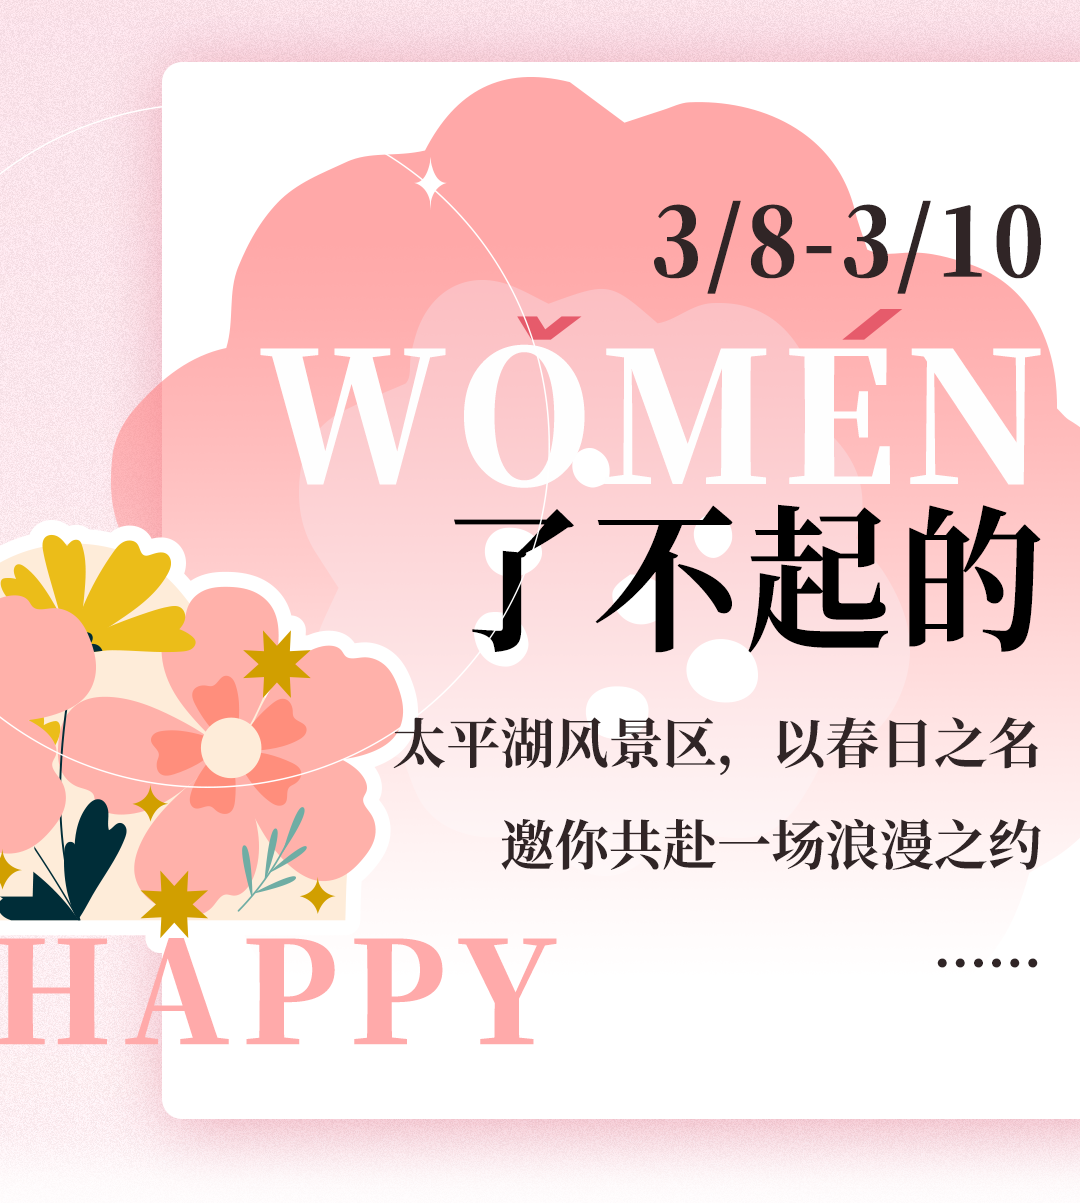 妇女节 | 三八福利特惠、免门票....相约太平湖,开启春日浪漫之旅~